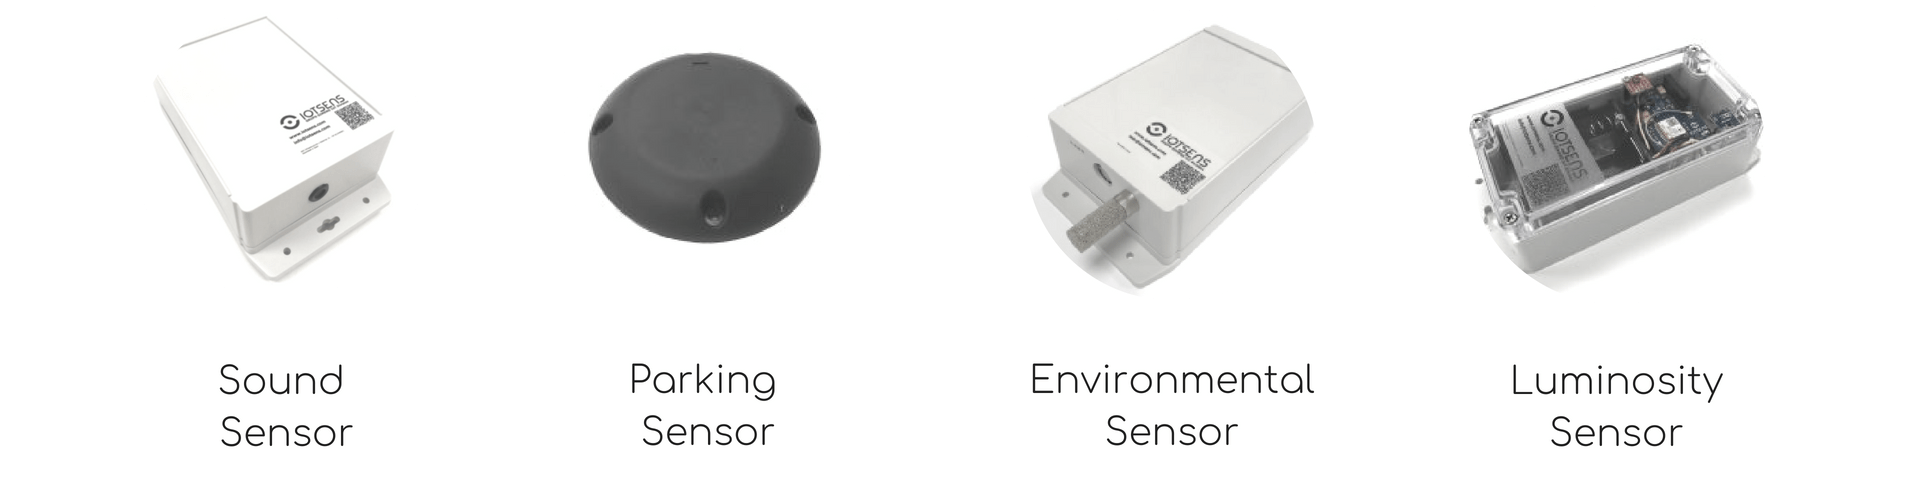 Smart City Sensors